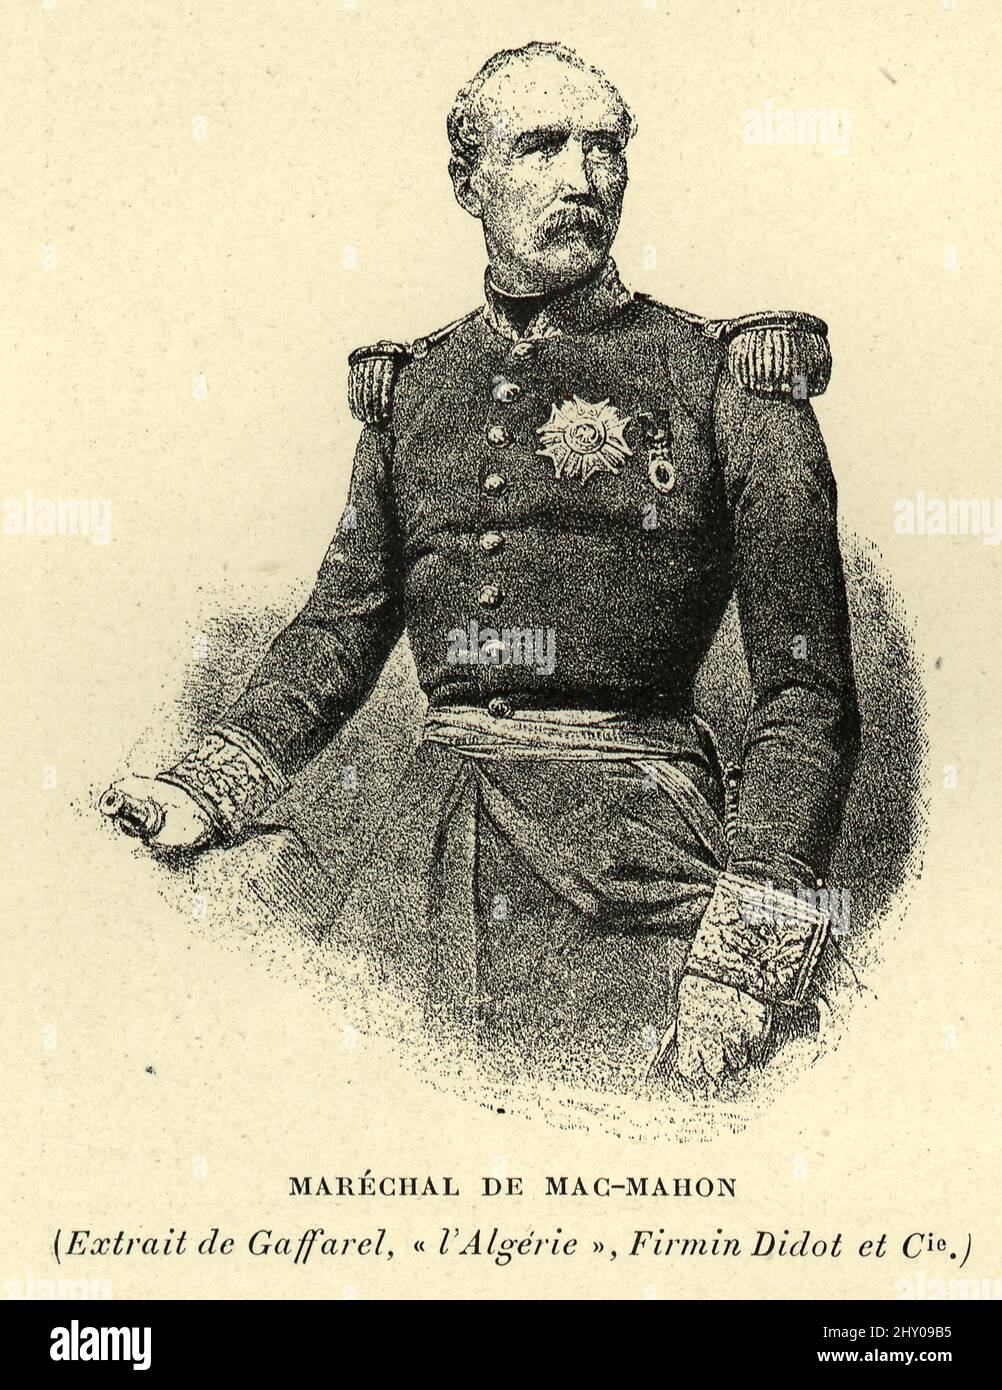 Patrice de MacMahon, Maréchal de France général et homme politique français et président de la France de 1875 à 1879 Banque D'Images